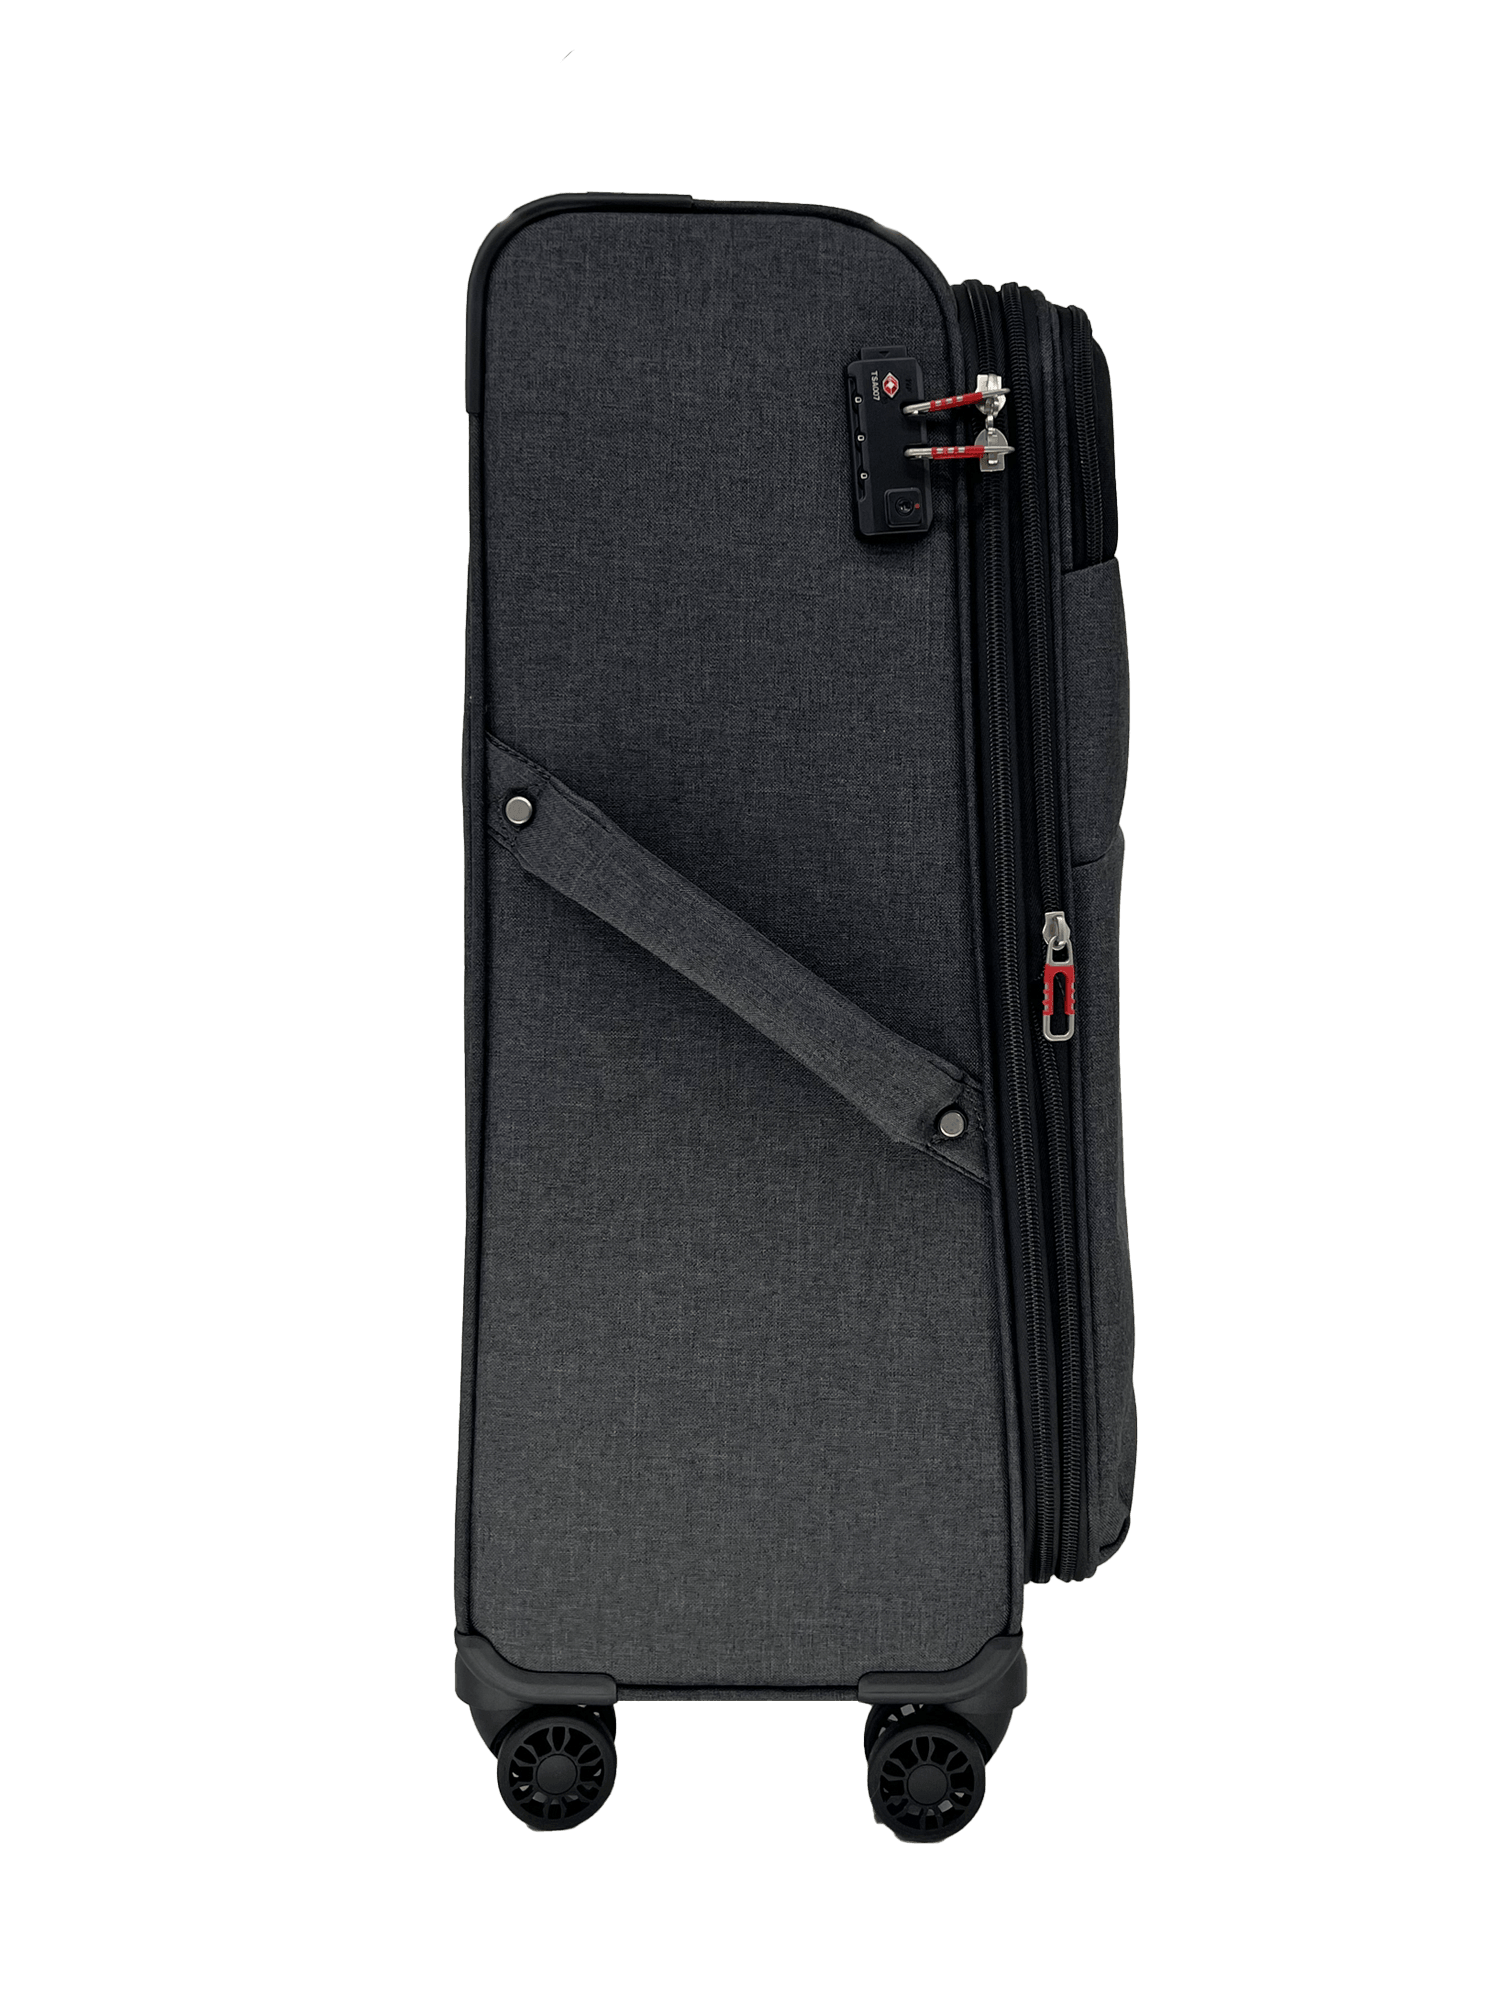 San Michelle Adventurer Pro 67cm Suitcase - San Michelle Bags suitcase nz